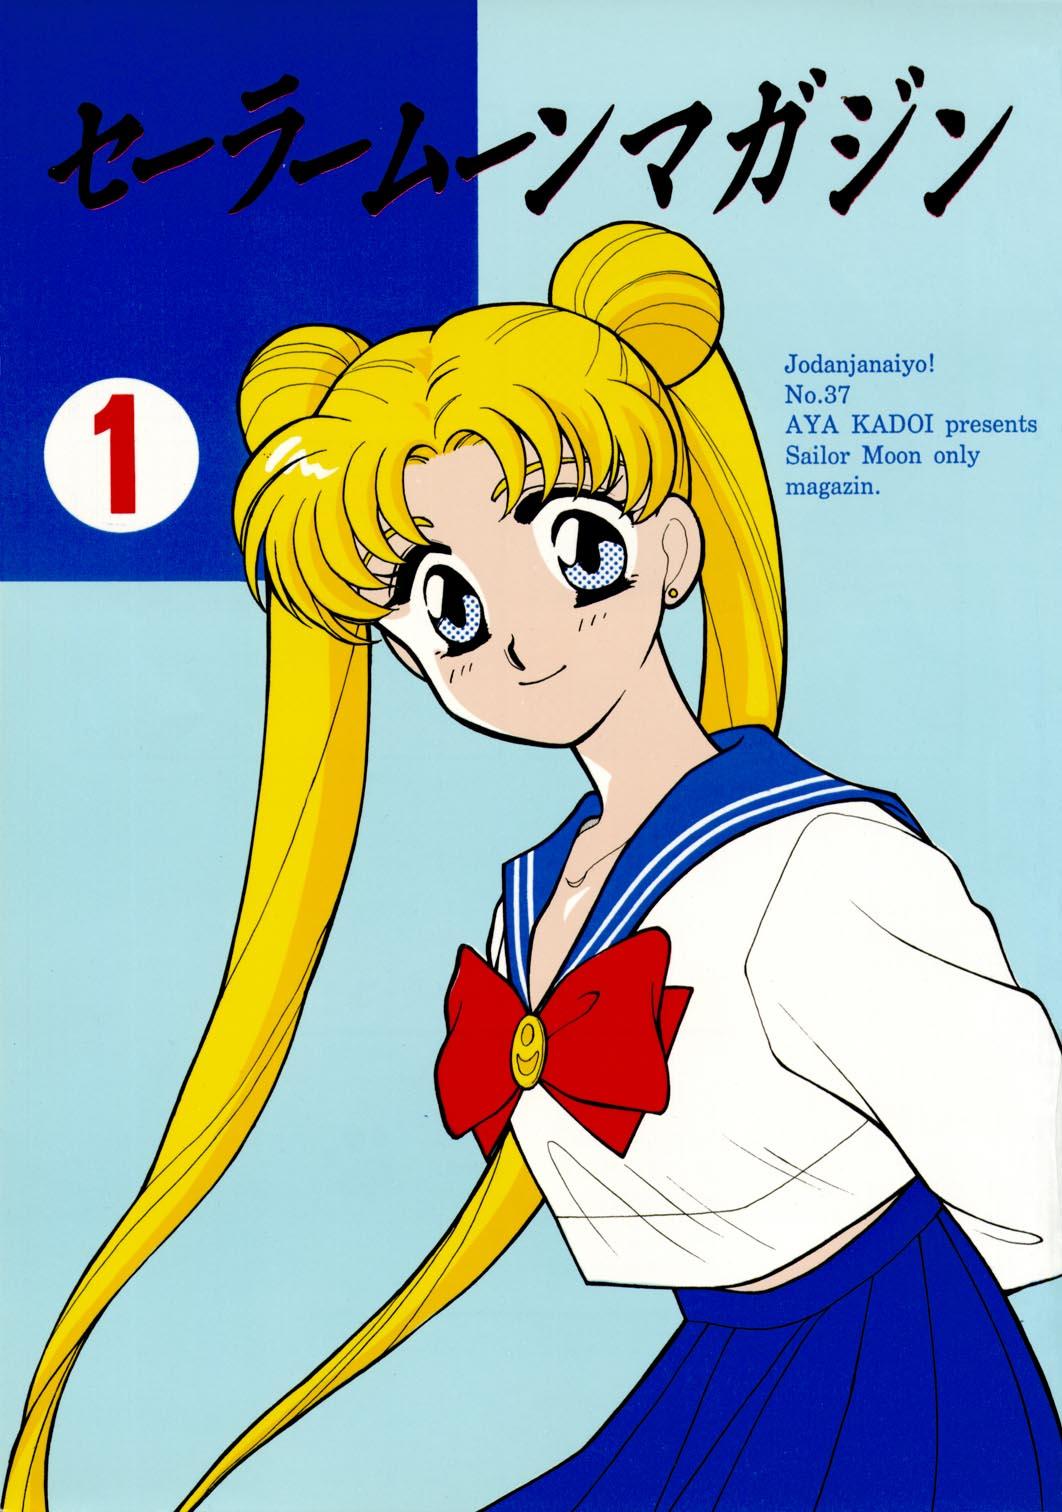 Scissoring Sailor Moon JodanJanaiyo - Sailor moon Teenie - Picture 1